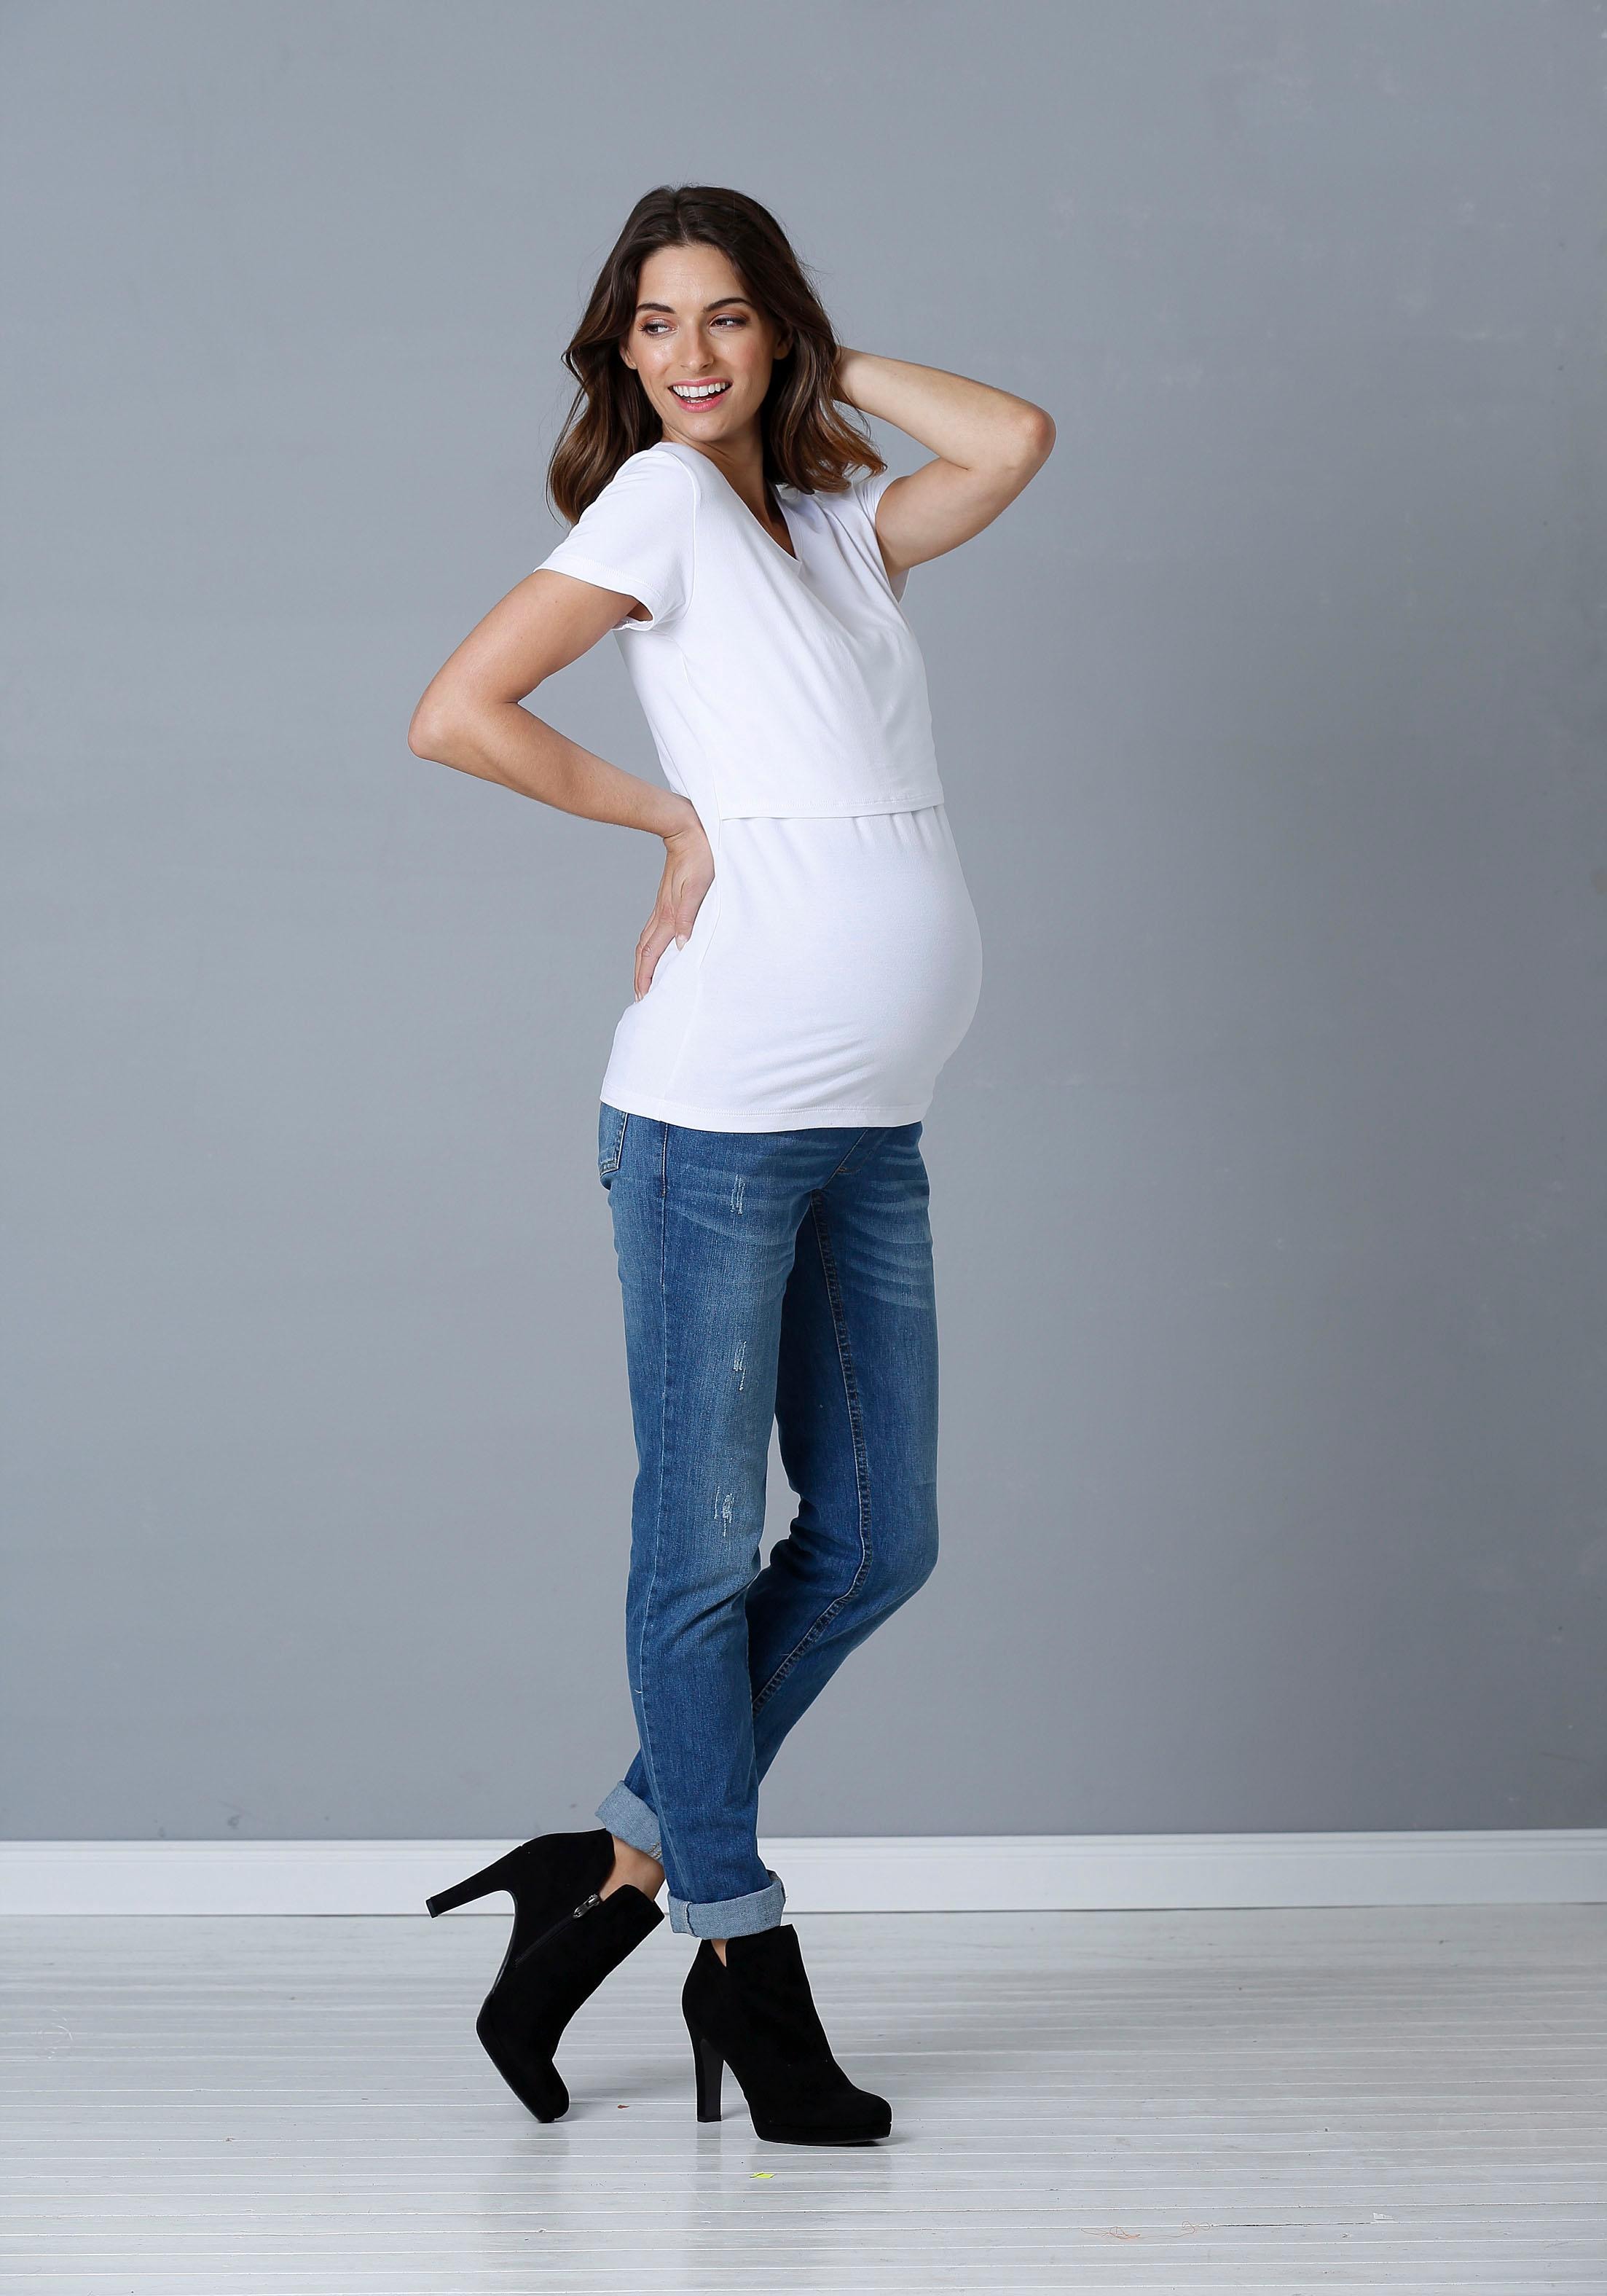 Neun Monate Umstandsshirt », 2er Pack T-Shirts für Schwangerschaft und Stillzeit«, mit praktischer Stillfunktion